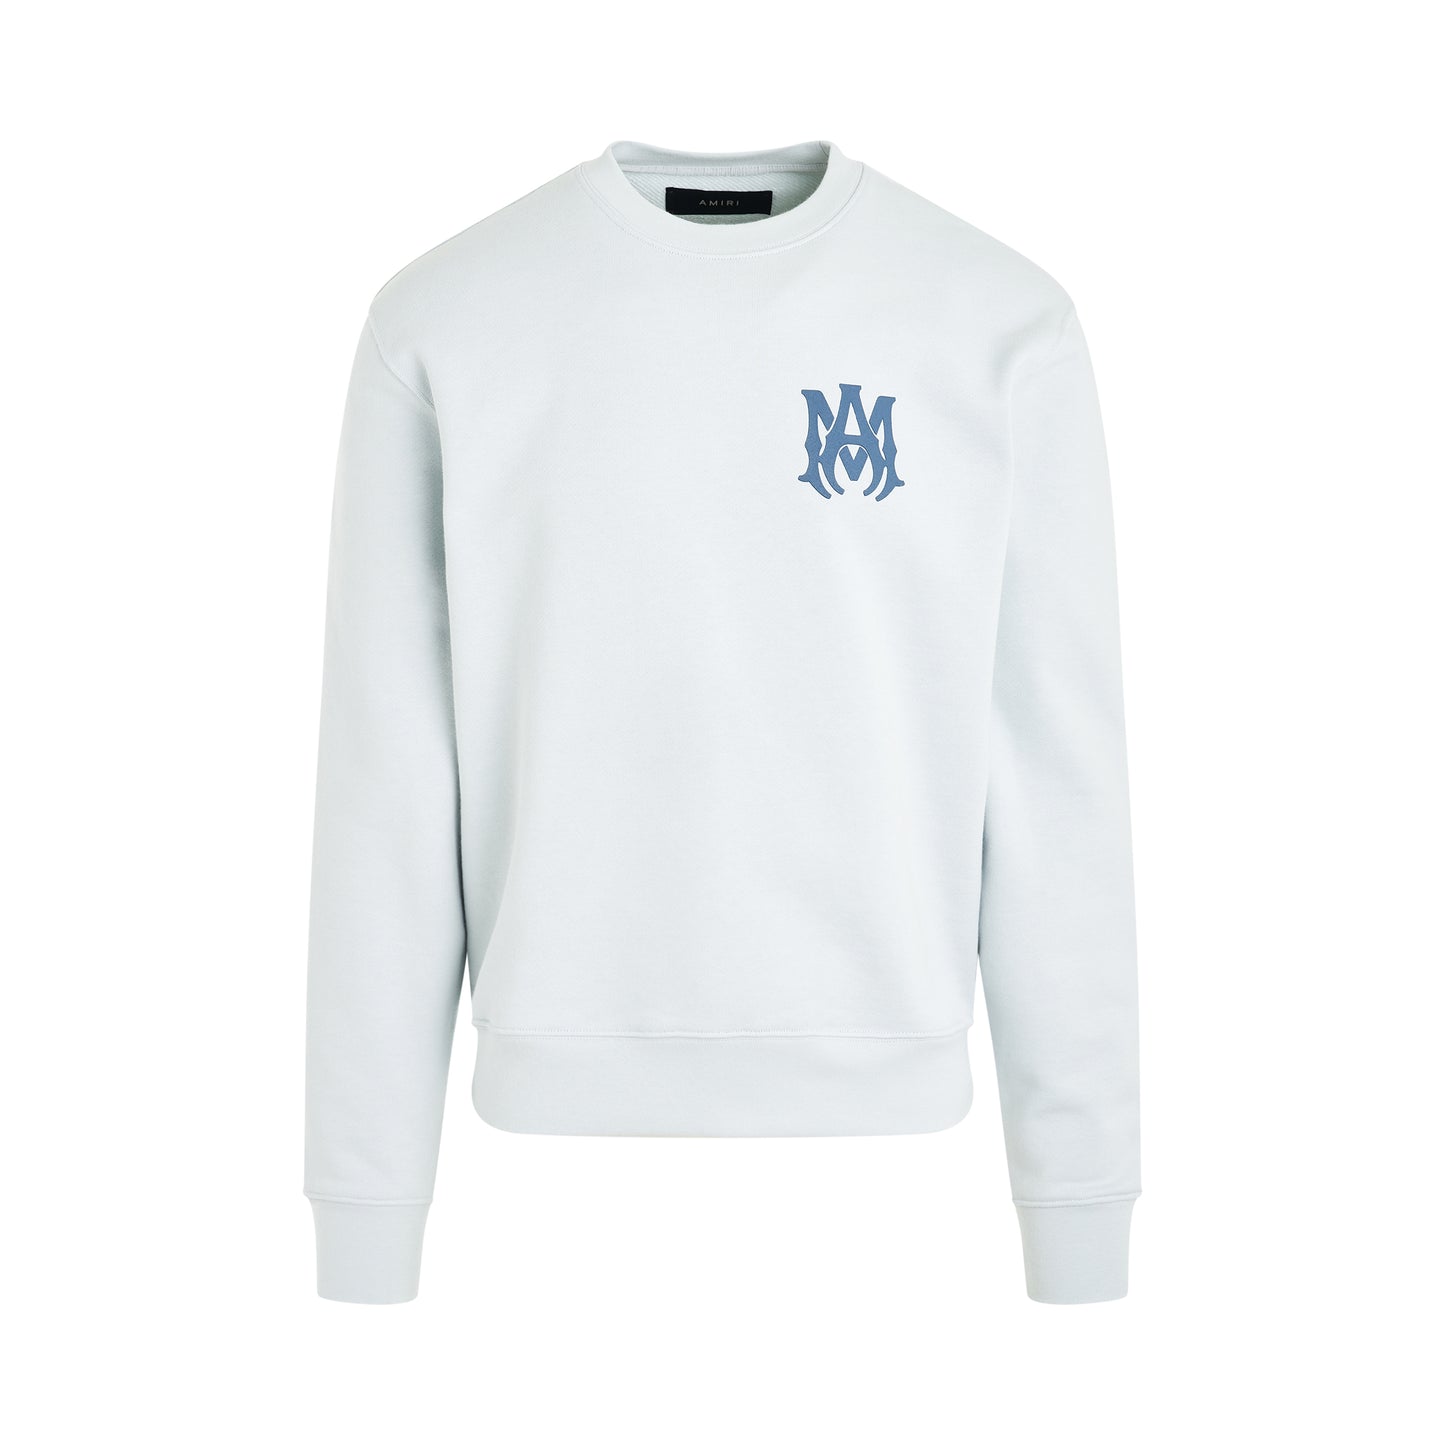 MA Logo Sweatshirt in Grey Dawn